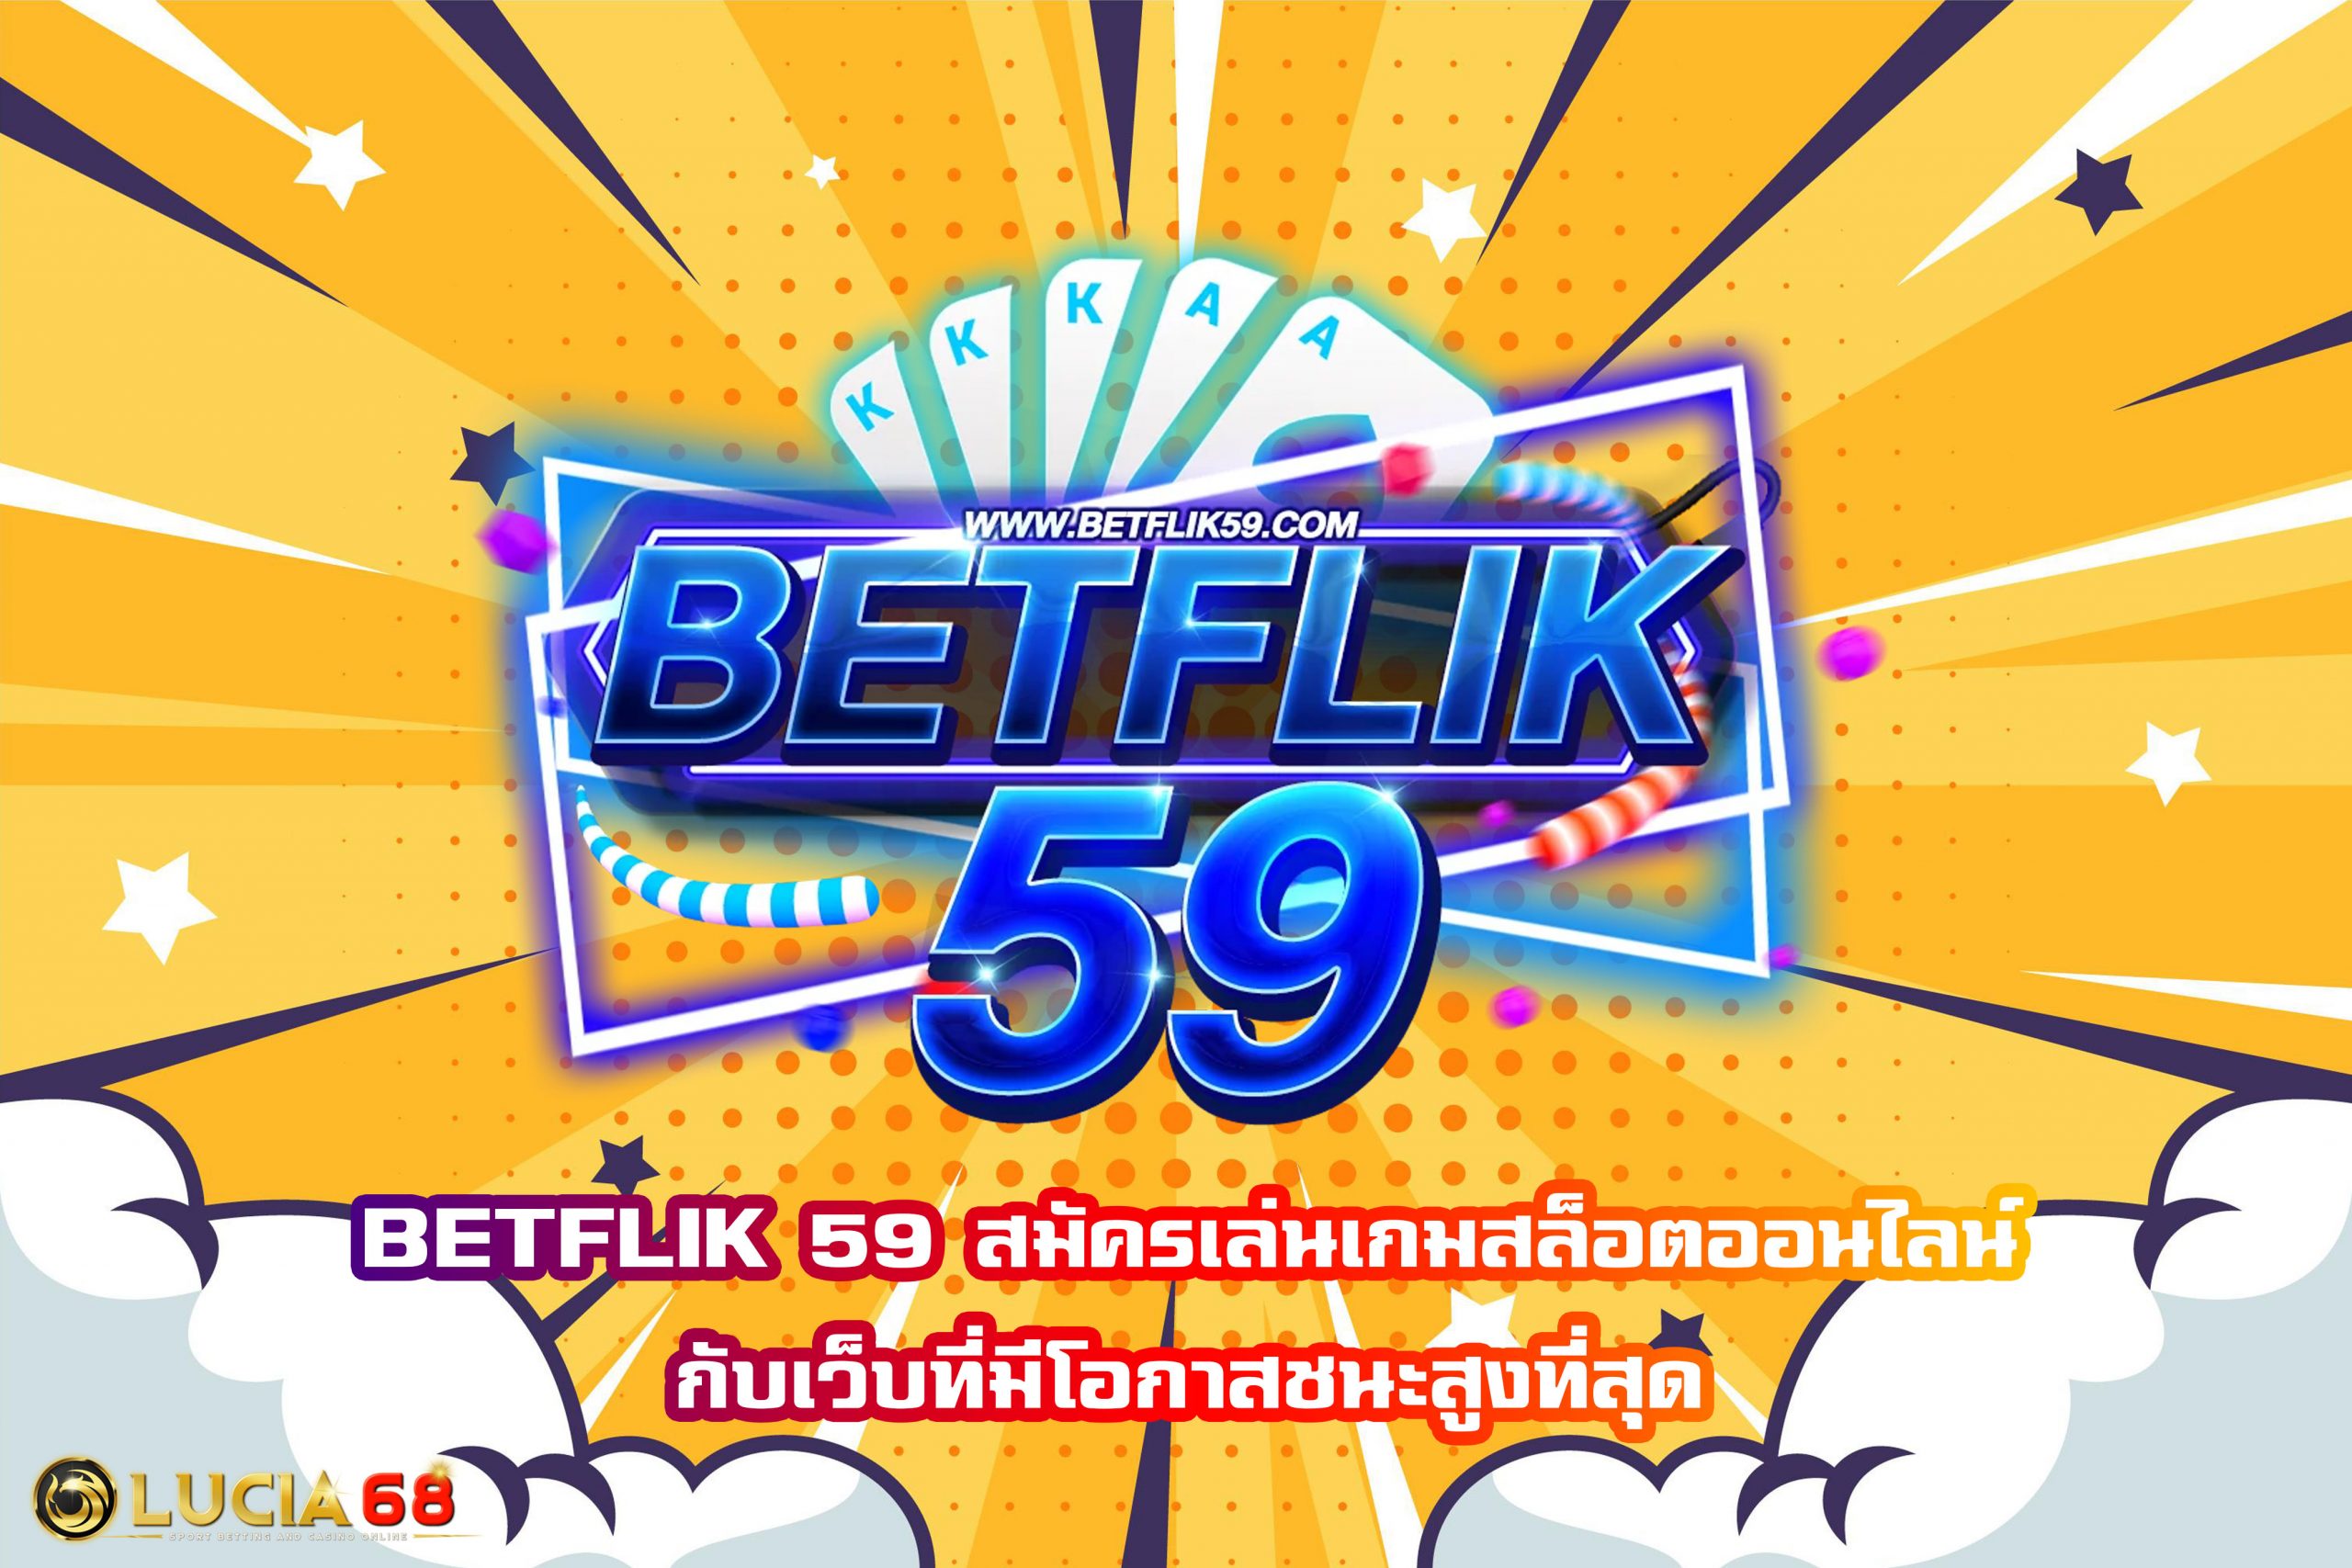 BETFLIK 59 สมัครเล่นเกมสล็อตออนไลน์กับเว็บที่มีโอกาสชนะสูงที่สุด